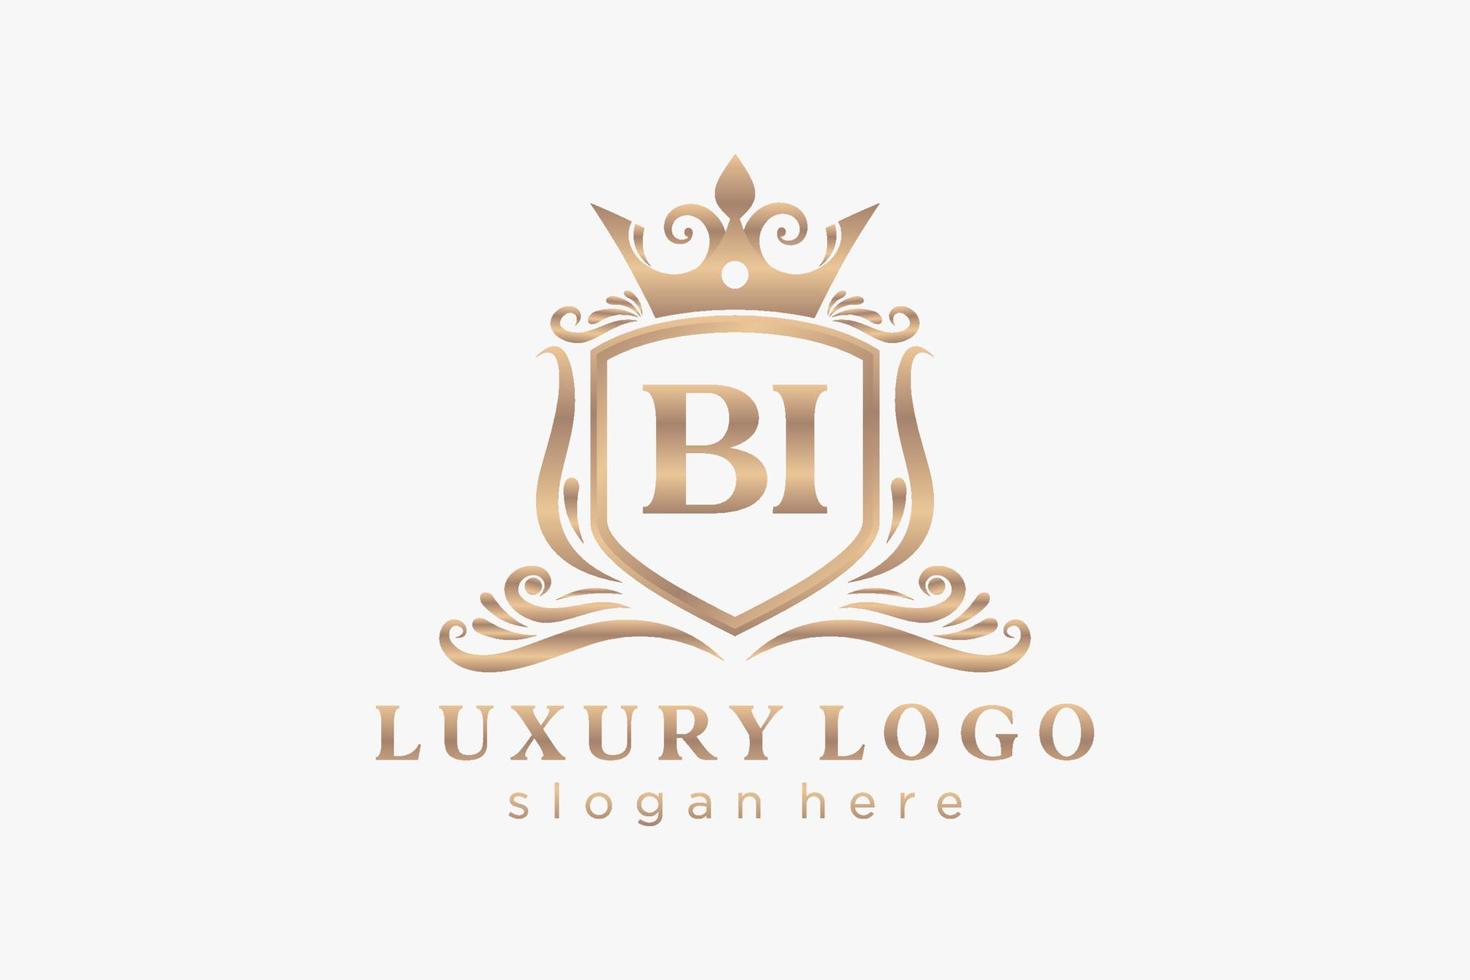 Royal Luxury Logo-Vorlage mit anfänglichem Bi-Buchstaben in Vektorgrafiken für Restaurant, Lizenzgebühren, Boutique, Café, Hotel, Heraldik, Schmuck, Mode und andere Vektorillustrationen. vektor